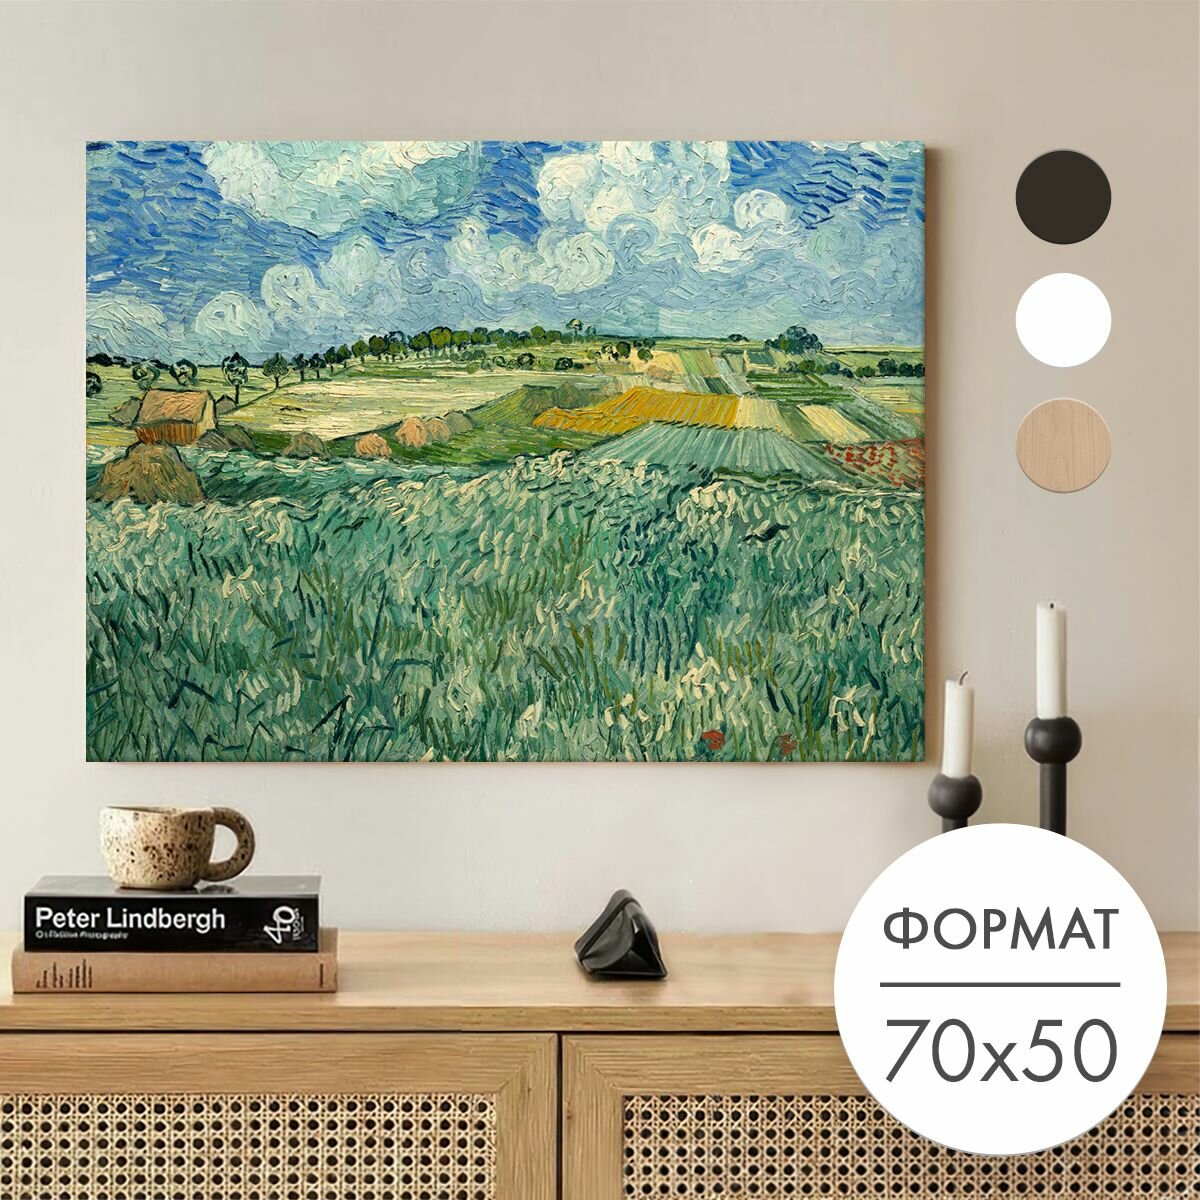 Постер 70х50 без рамки "Ван Гог Равнина близ Овера" для интерьера